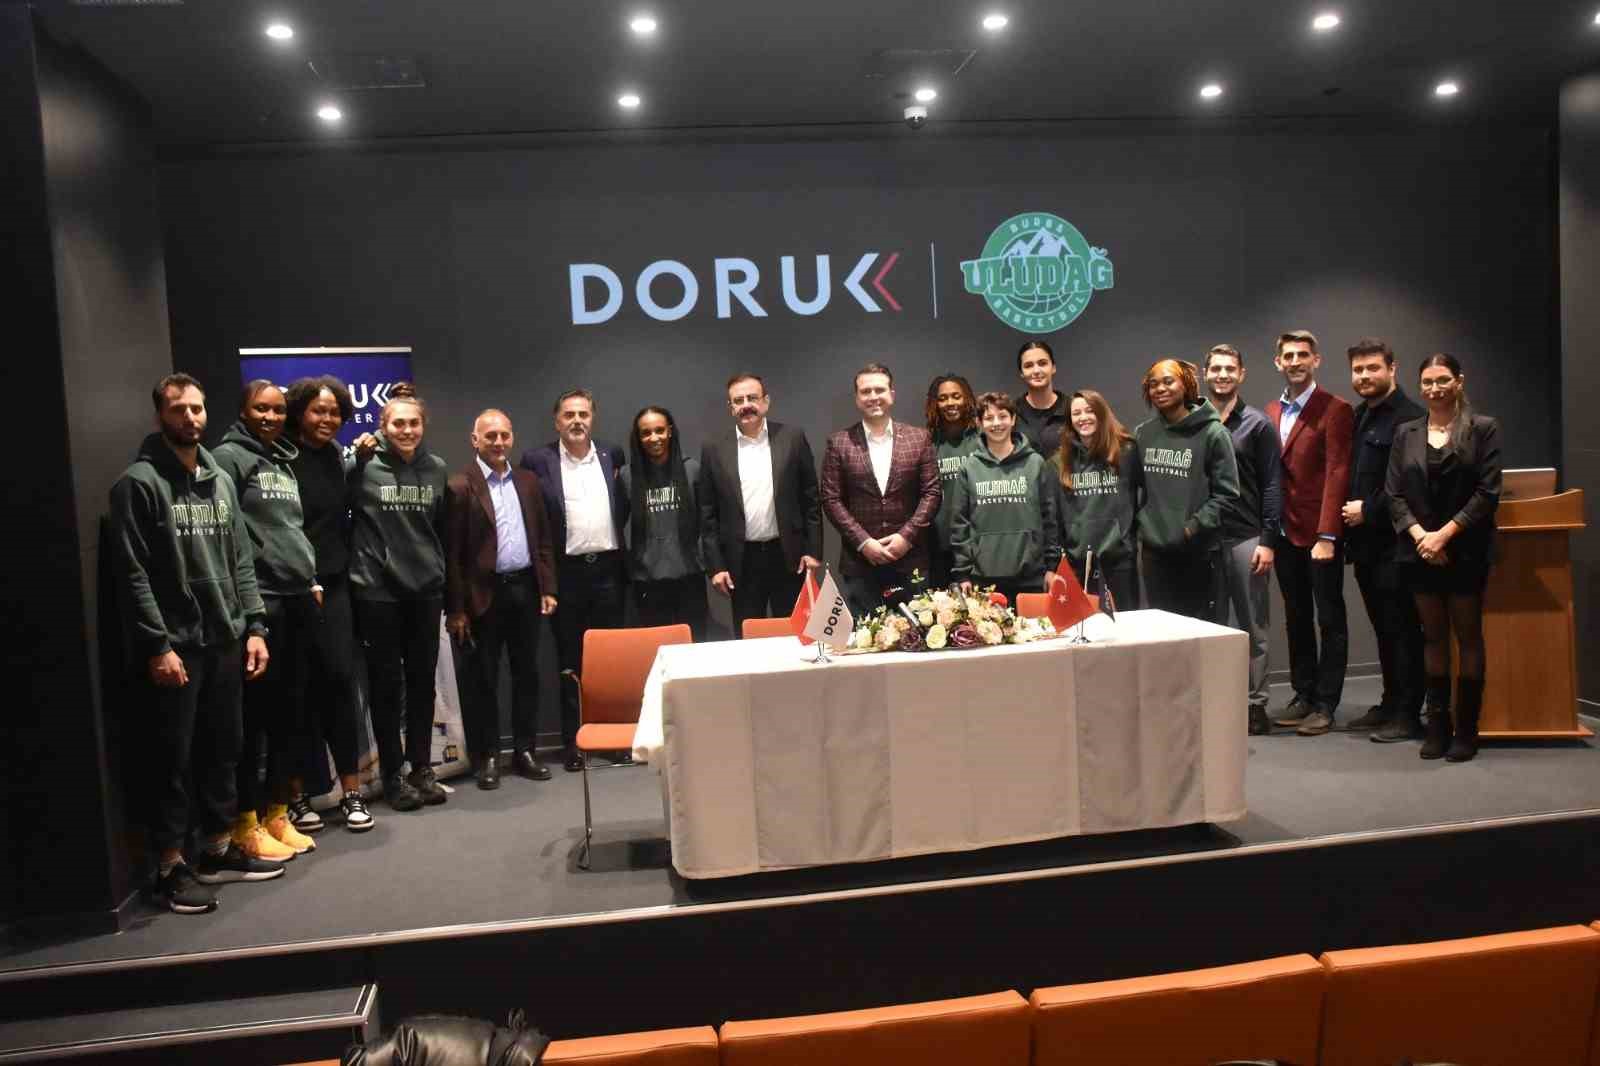 Uludağ Kadın Basketbol Takımı’nın sağlık sponsoru Doruk Hastaneleri oldu